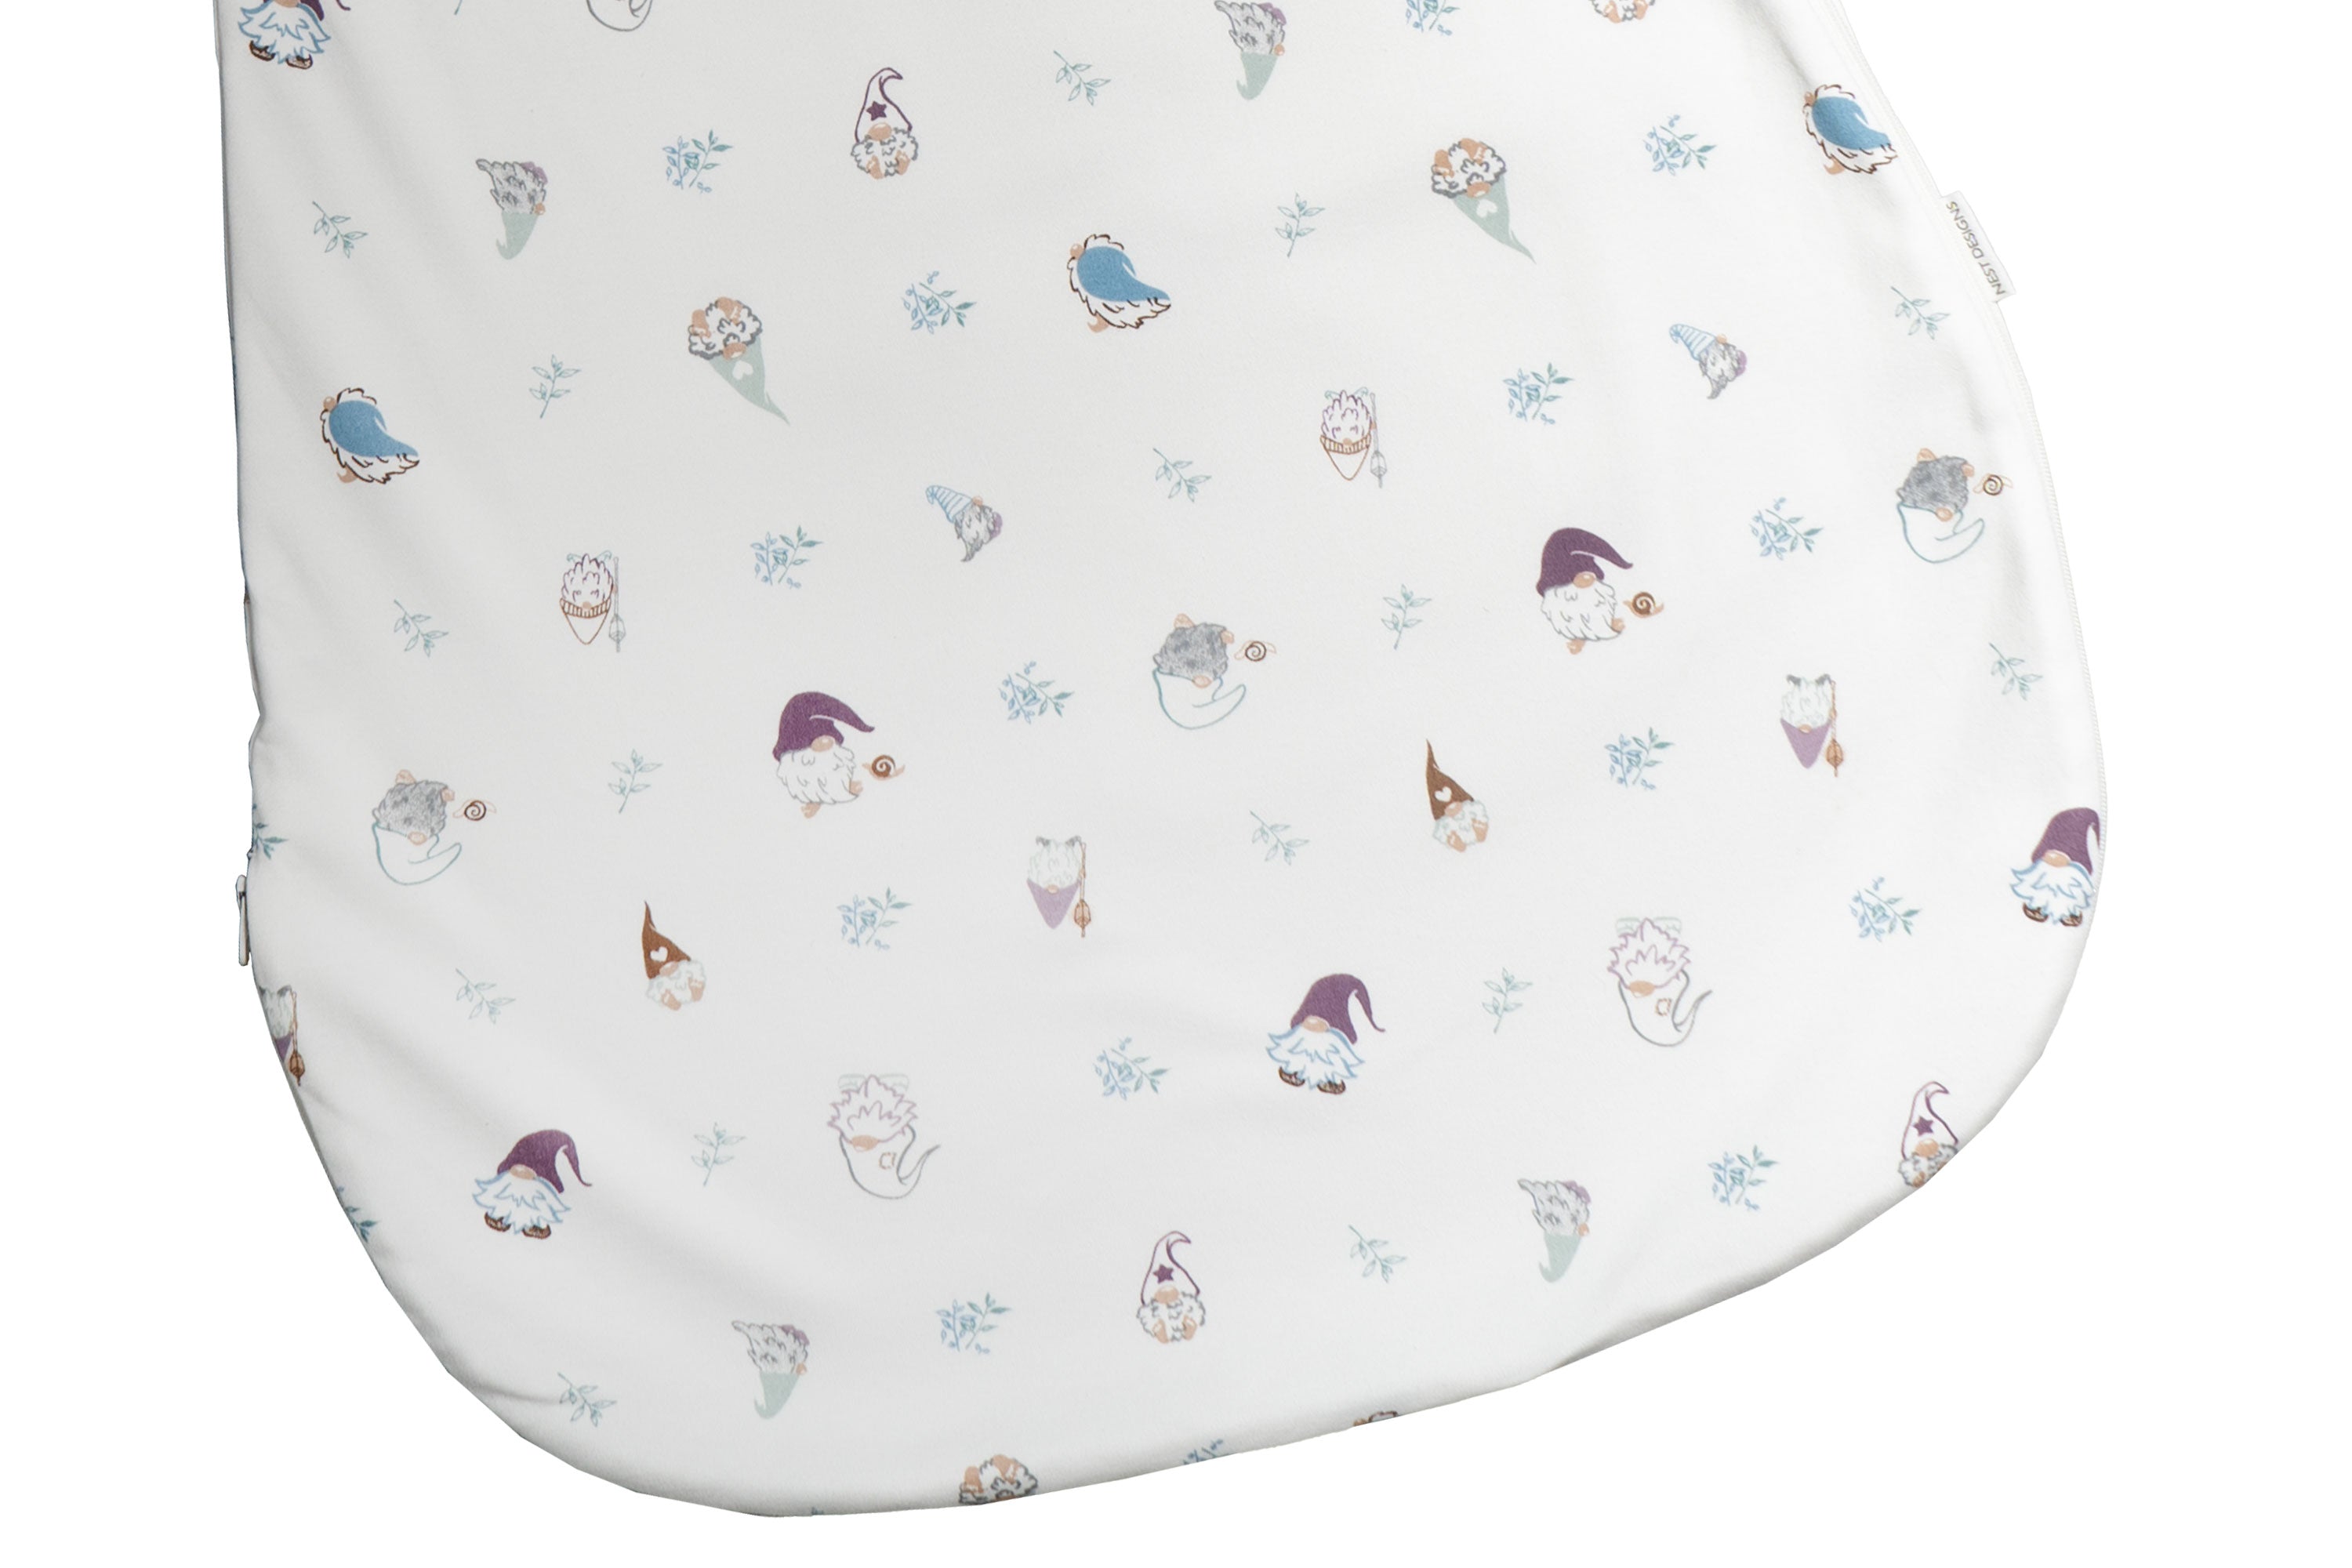 Removable Long Sleeve Sleep Bag 1.0 TOG (Organic Cotton) - Oh Gnome!